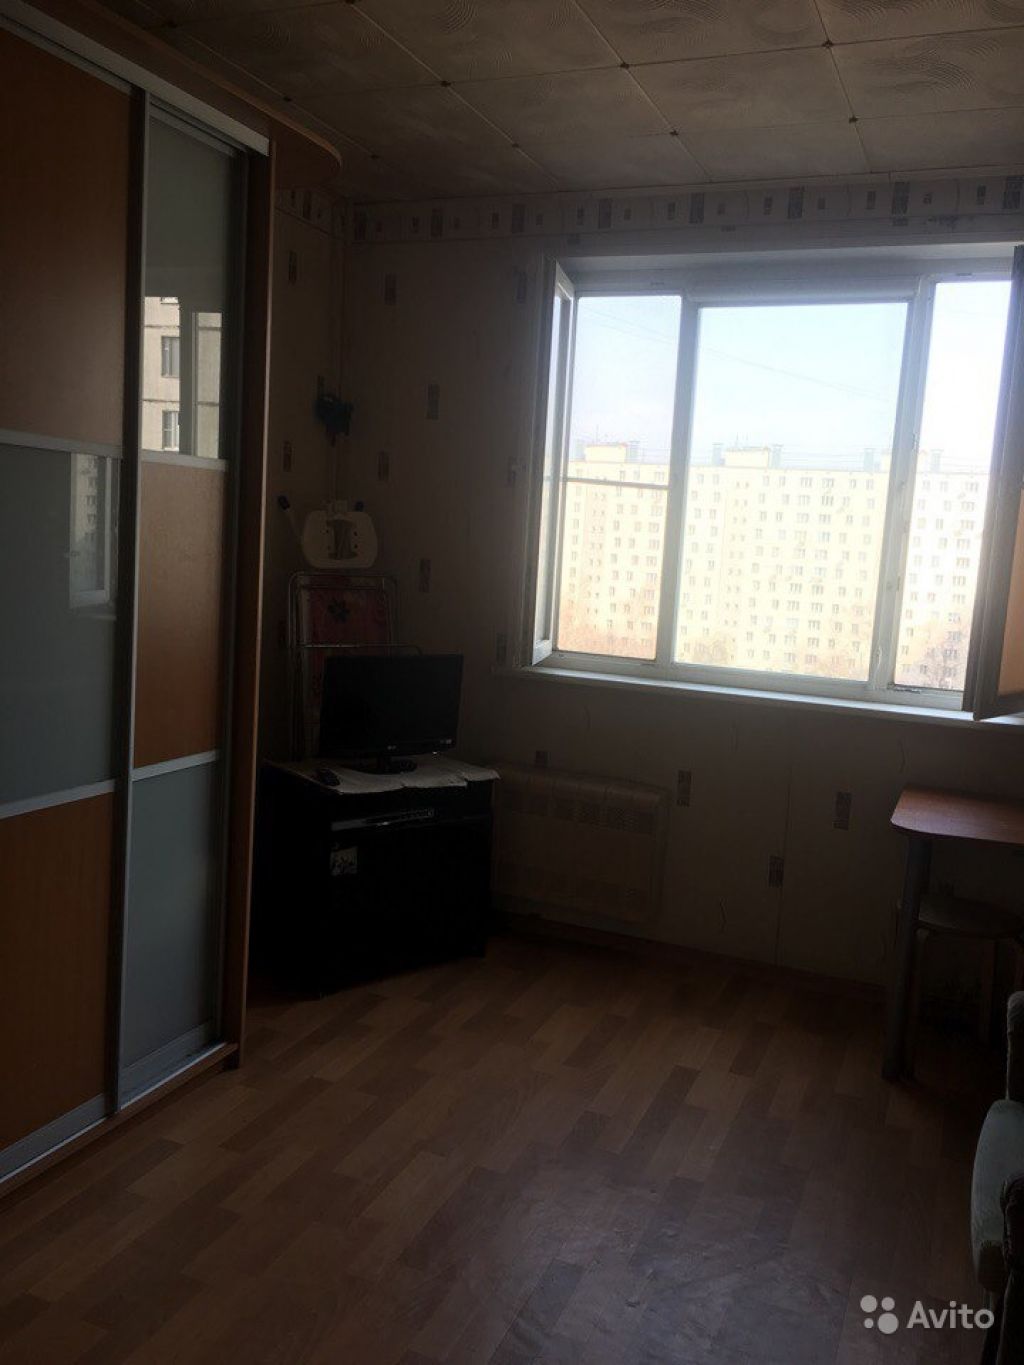 Продам комнату Комната 15 м² в 3-к квартире на 8 этаже 16-этажного панельного дома в Москве. Фото 1